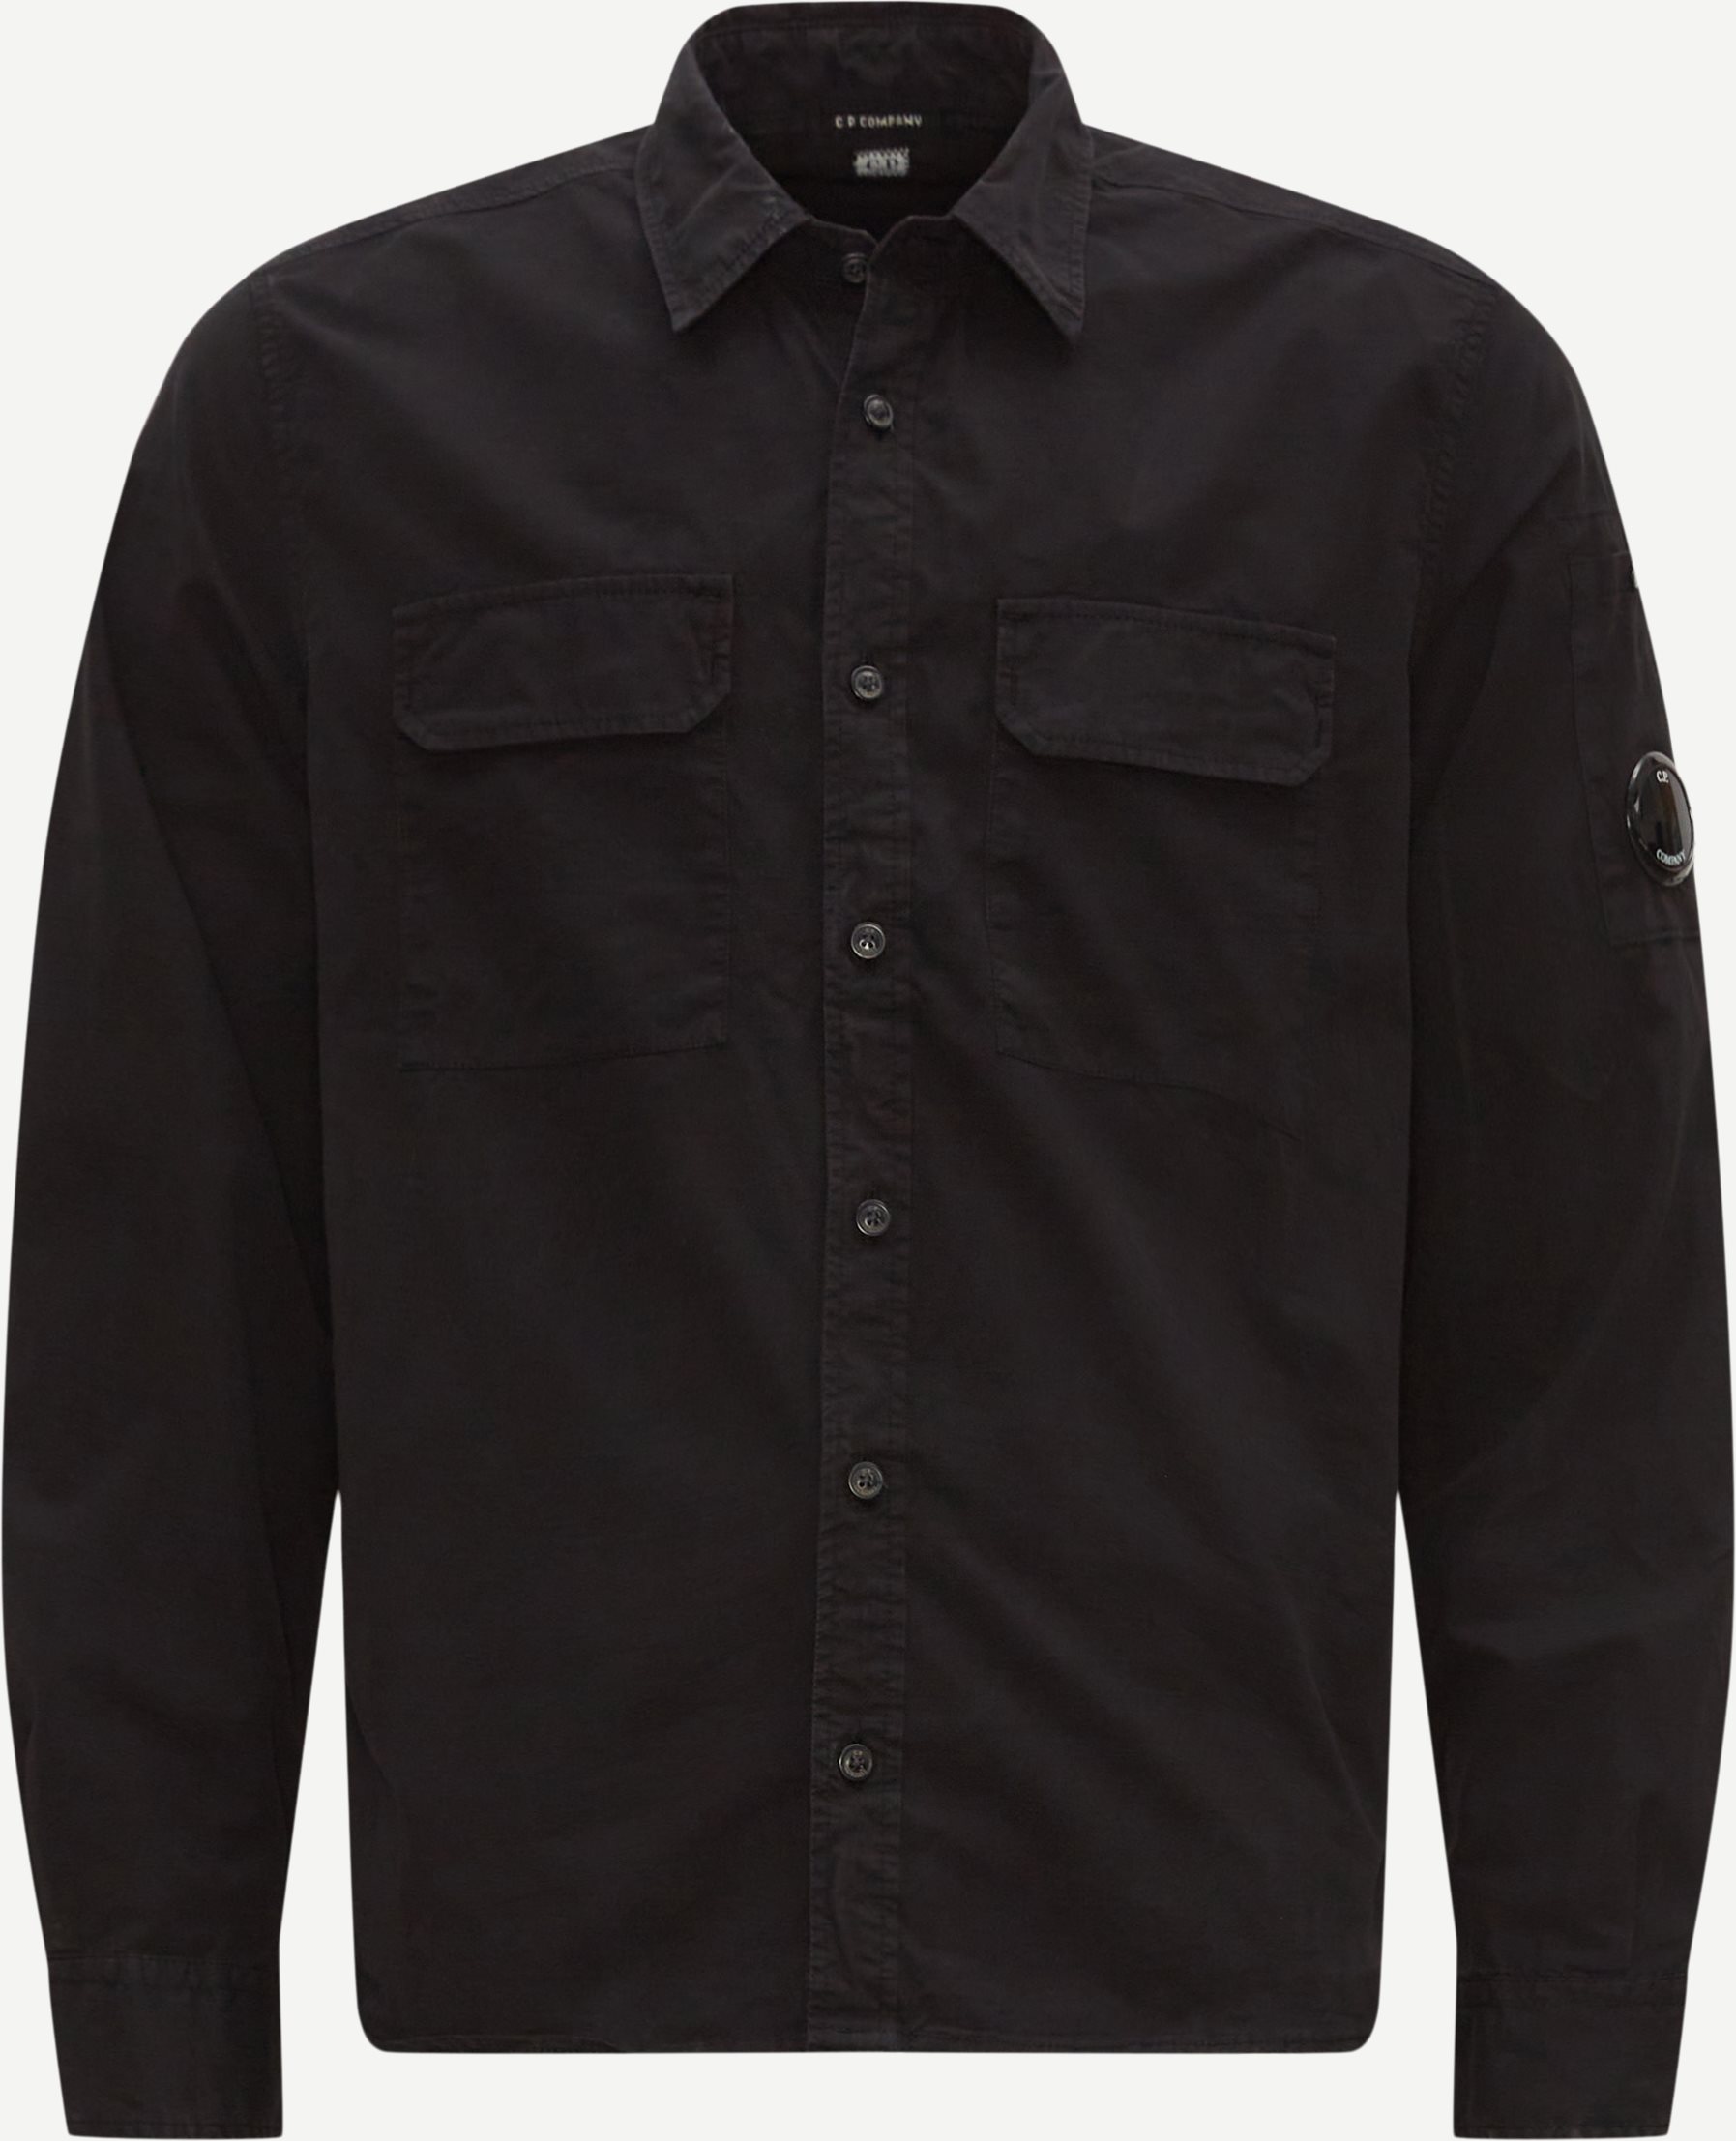 C.P. Company Shirts SH157A 002824G Black